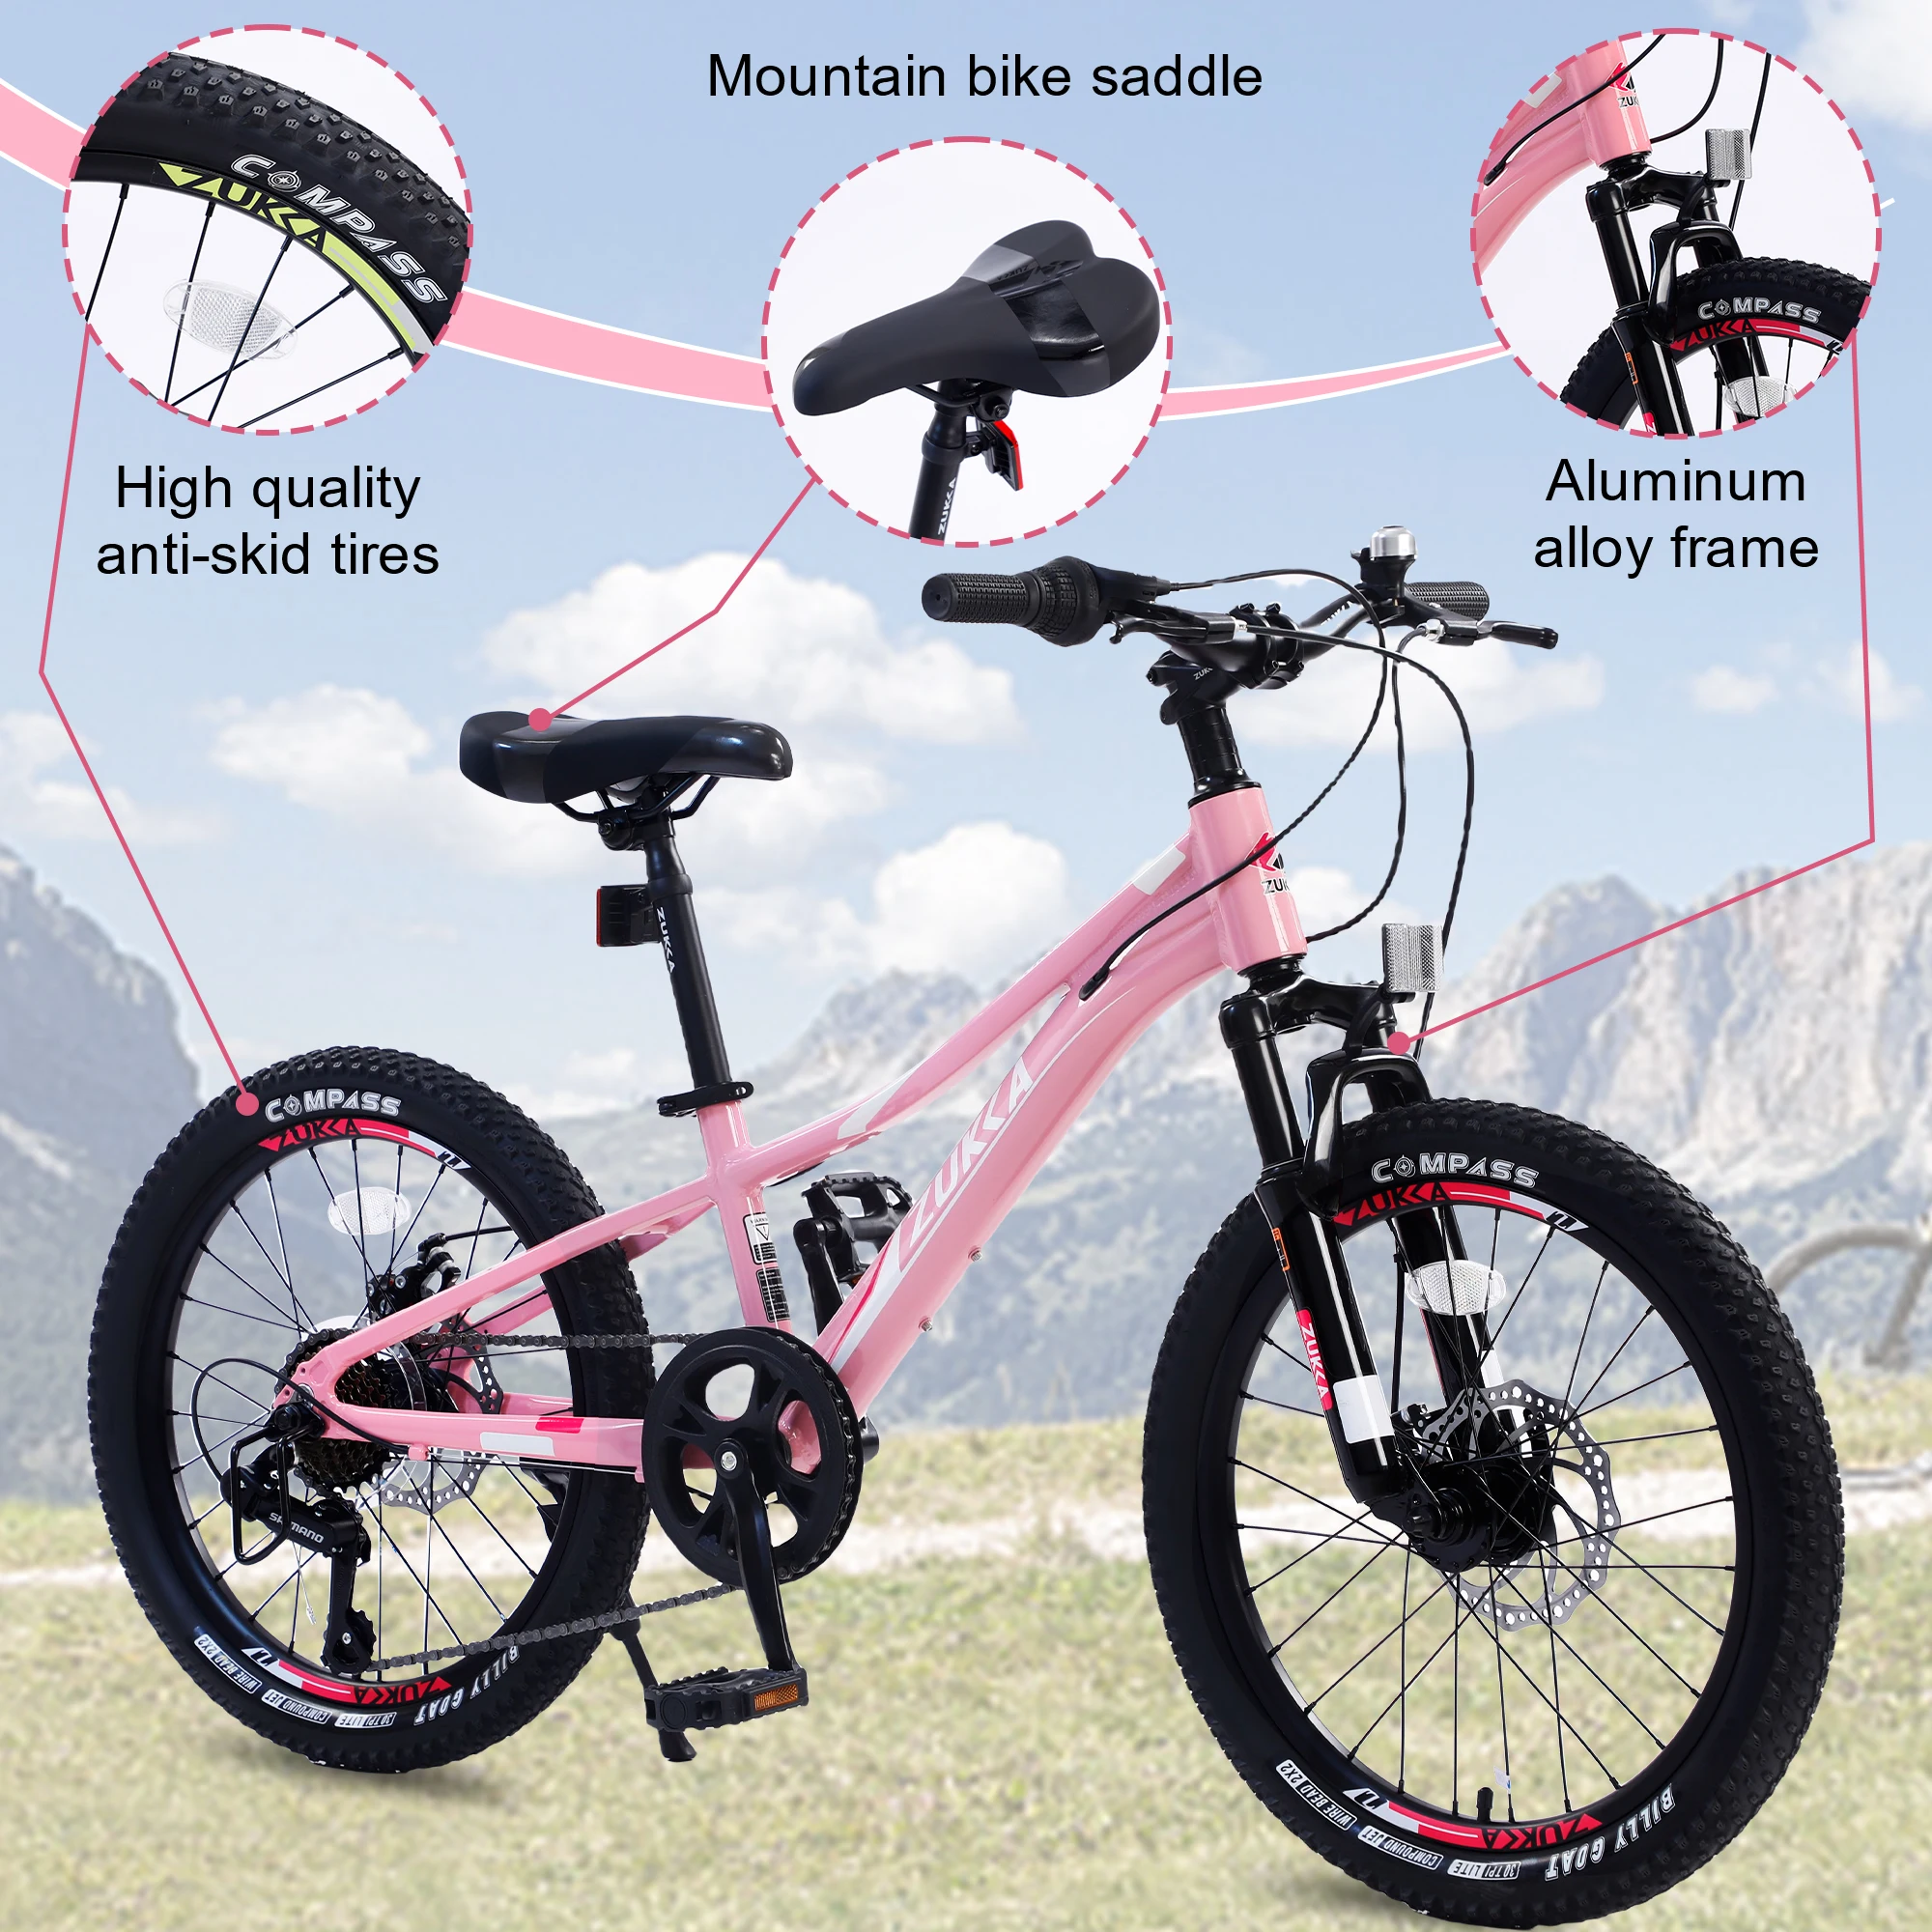 

Детский горный велосипед ZUKKA, алюминиевая рама, двойной дисковый тормоз, 7 скоростей, для детей 5-12 лет